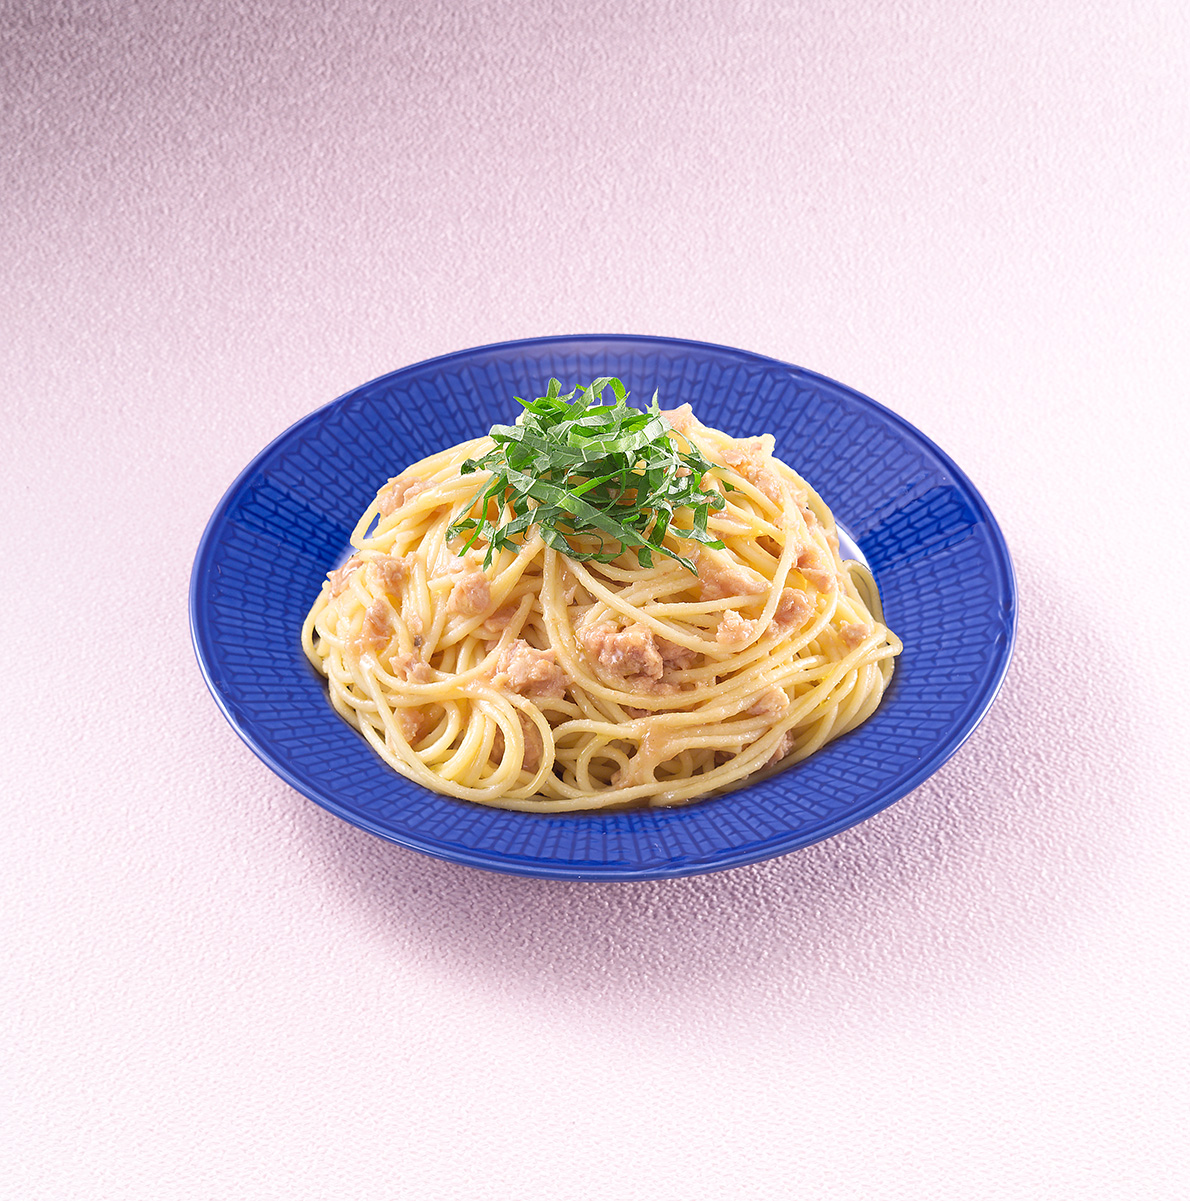 ツナと梅の混ぜるだけスパゲッティ レシピ ハウス食品